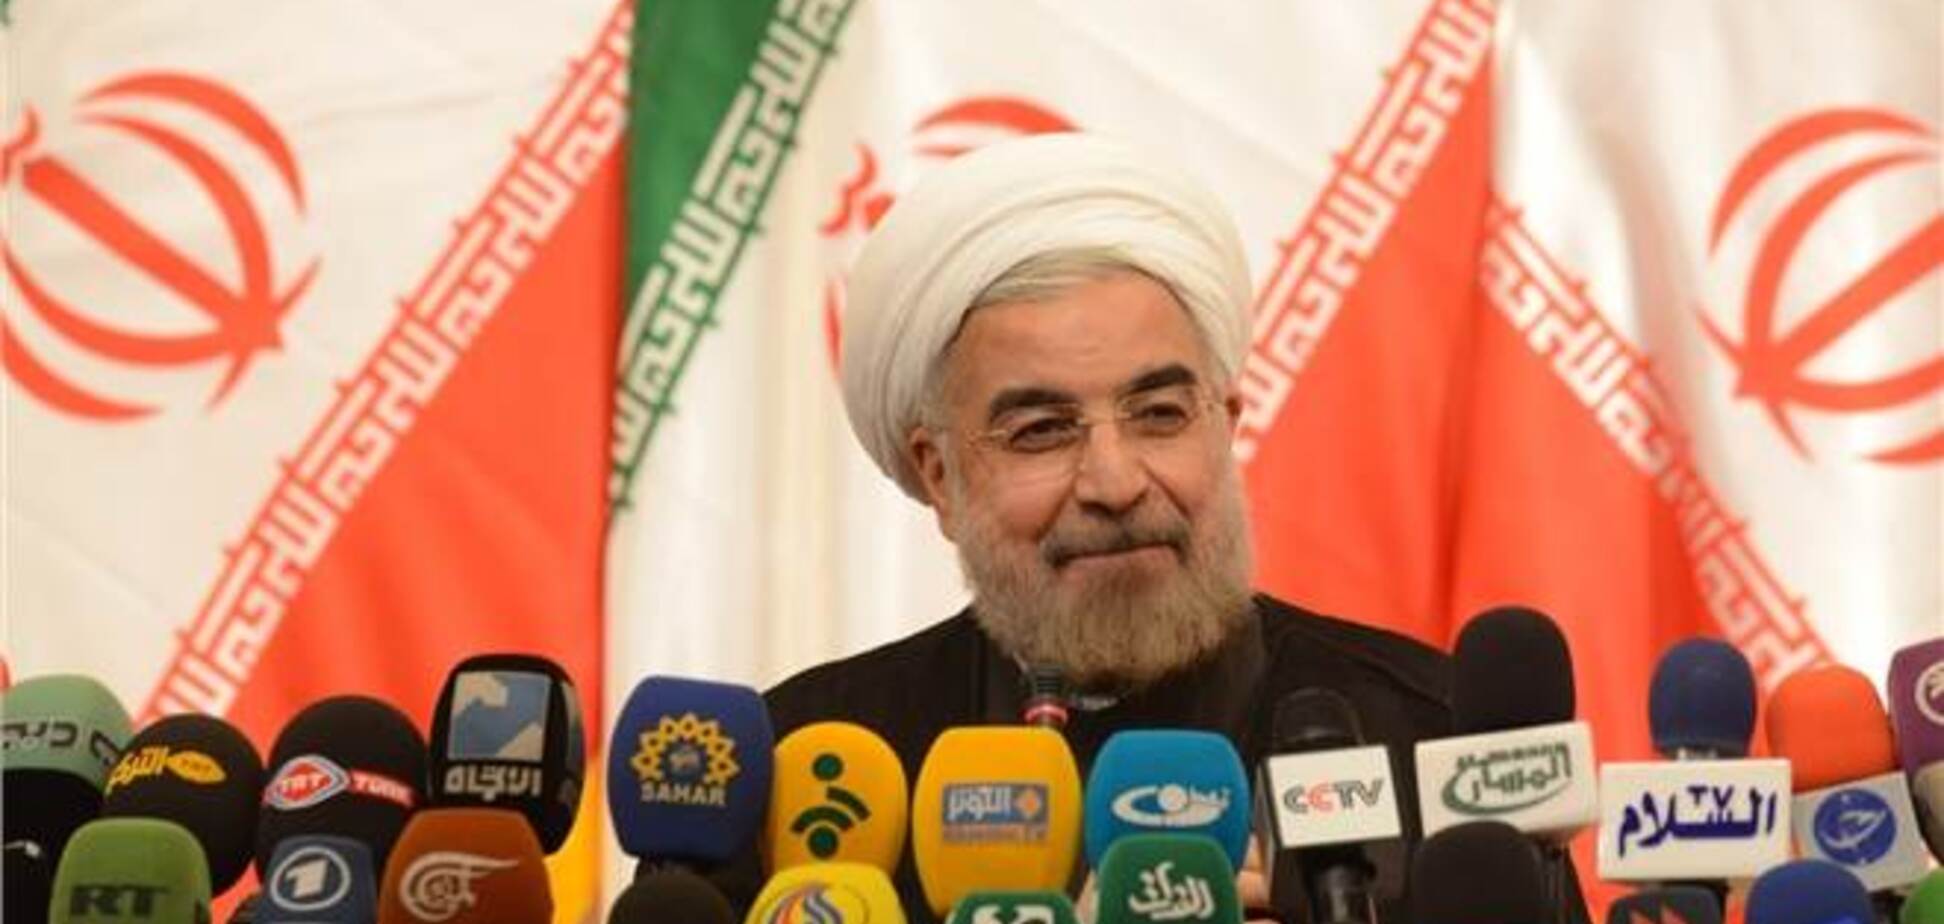 США готовы к 'серьезным переговорам' с новым лидером Ирана